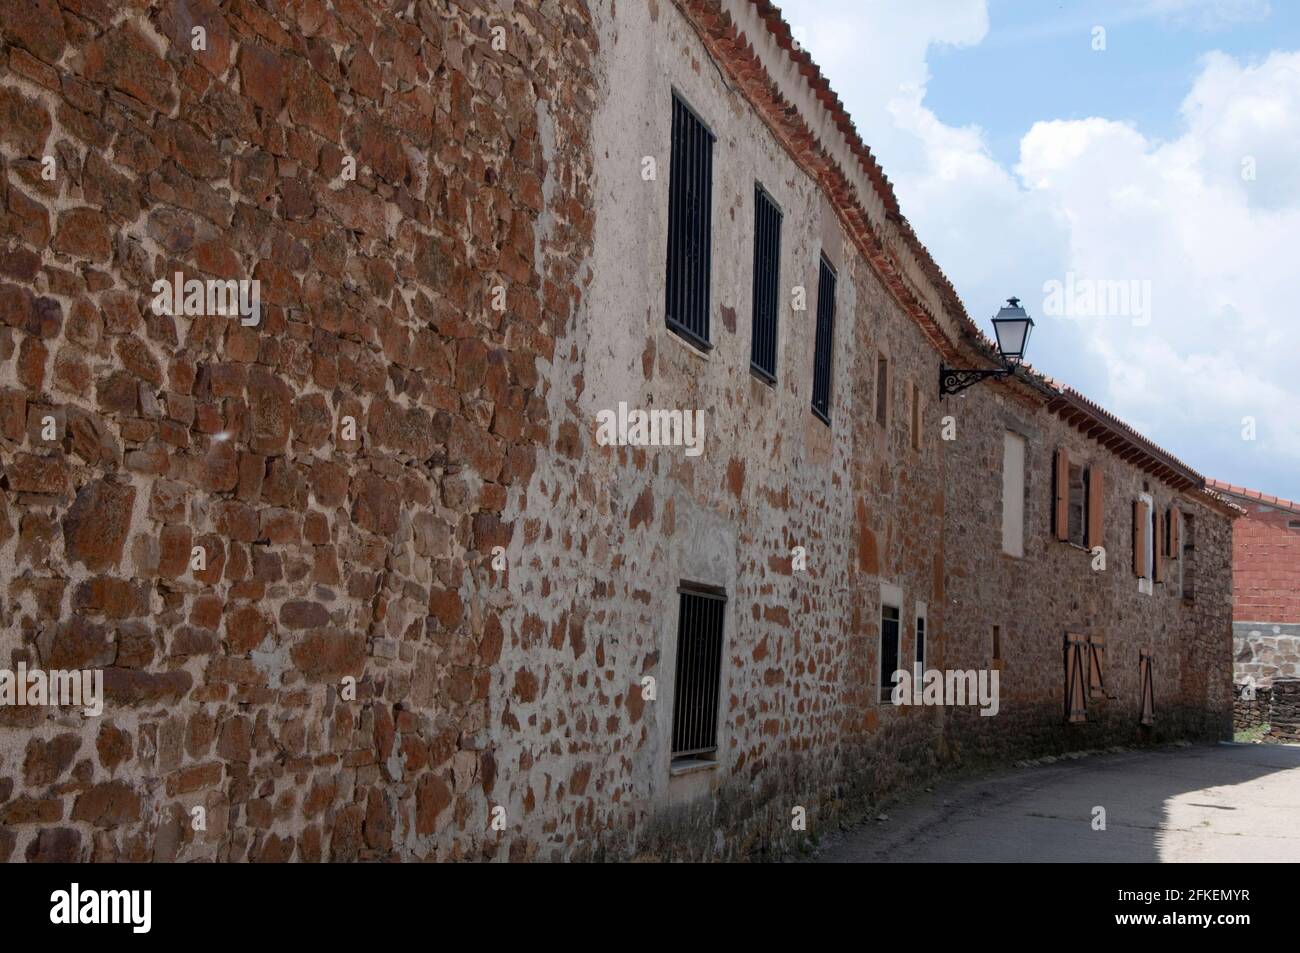 Vista su una strada del villaggio senza persone. Architettura tradizionale, case in pietra. Soria, Spagna, Europa Foto Stock